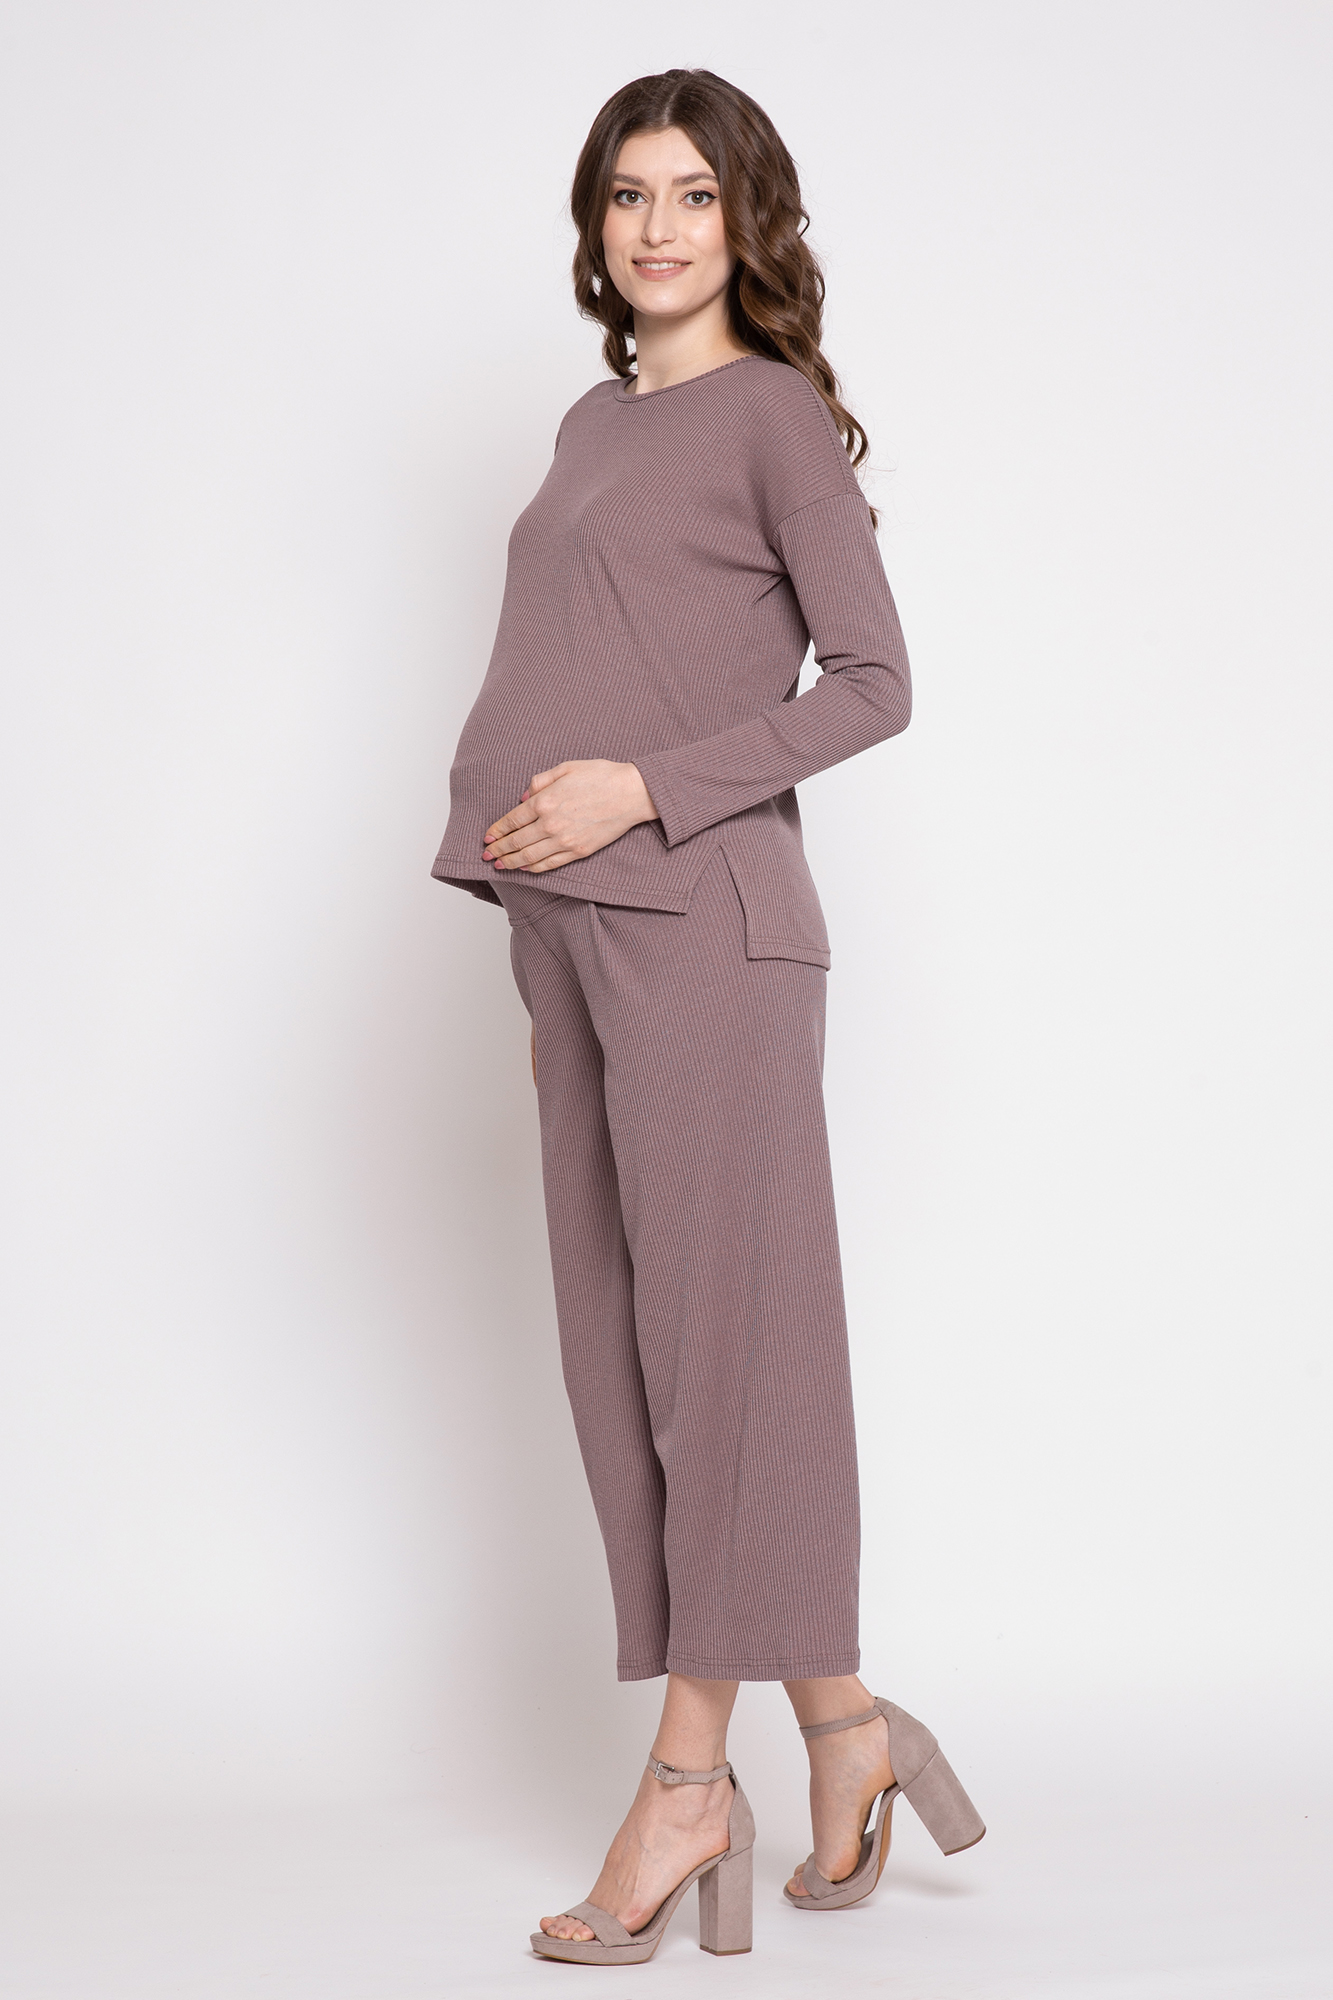 Костюм для беременных женский Magica bellezza 0184а коричневый 46 RU